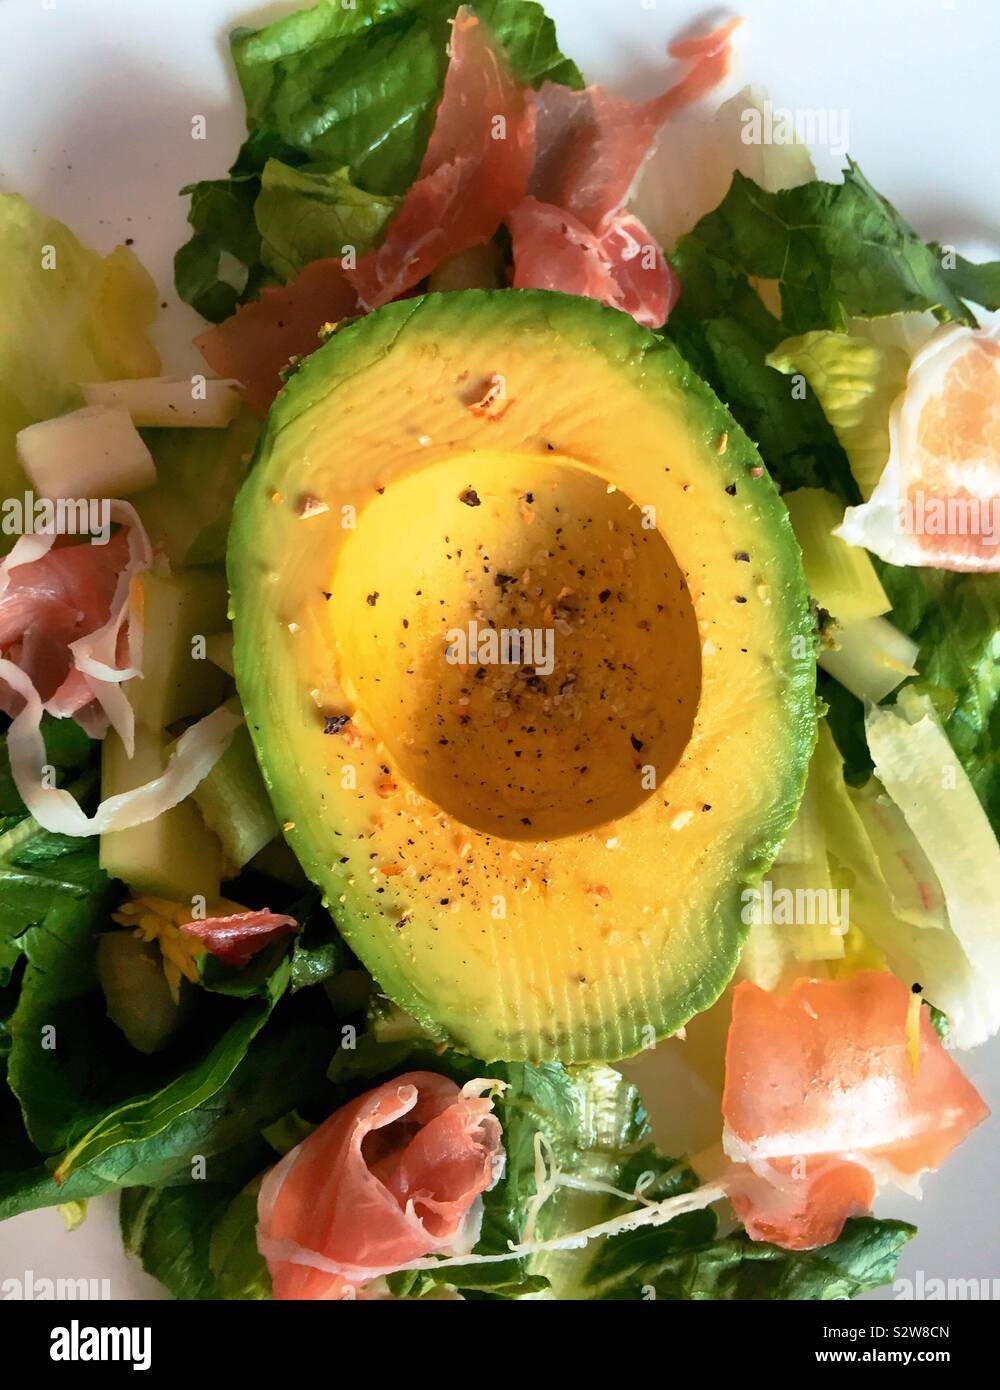 Piatto dettaglio laici di una metà di avocado su una fresca insalata estiva Foto Stock